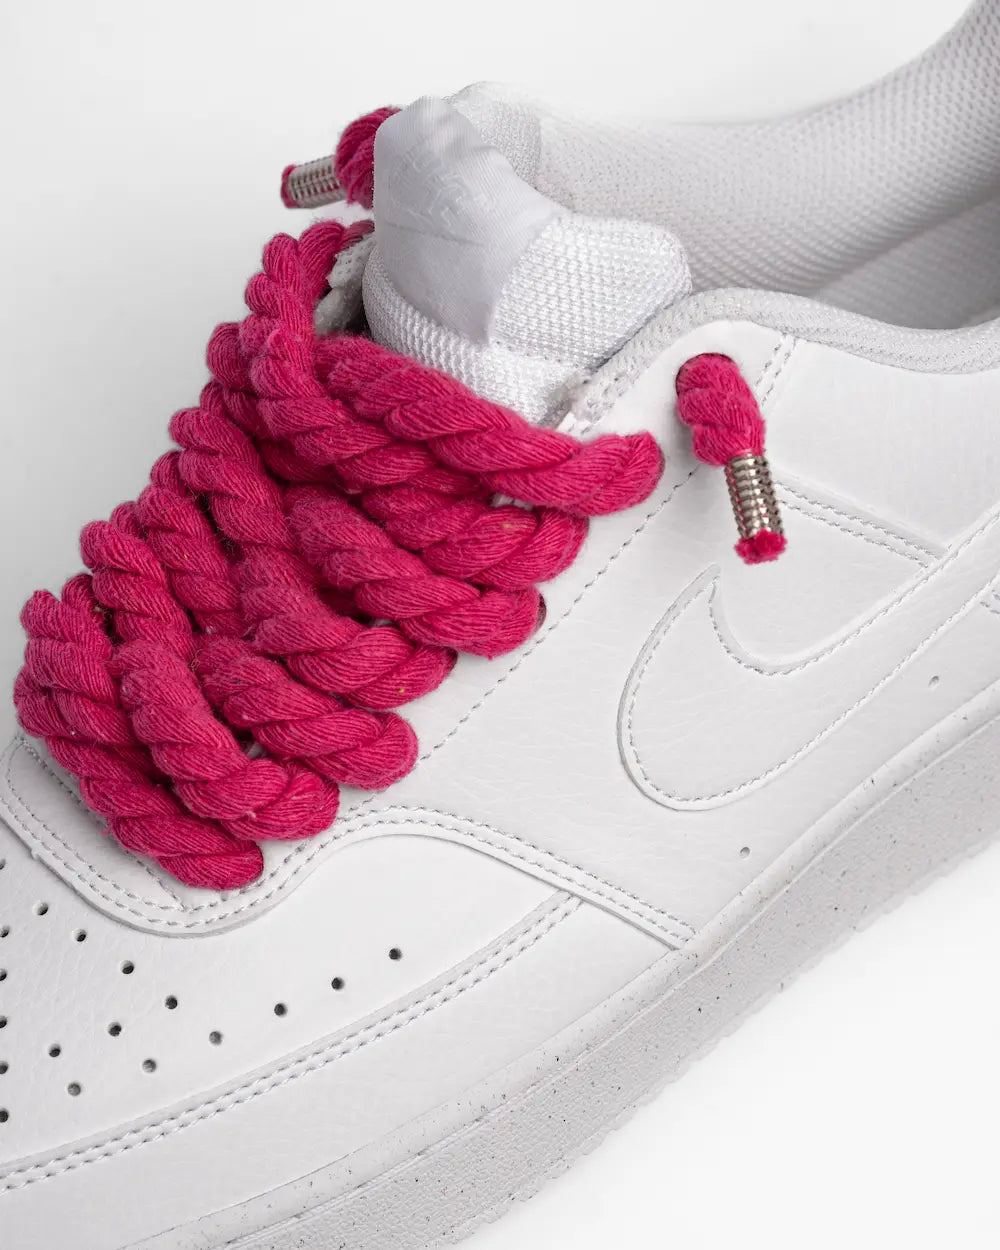 Nike Court Vision personalizzata con lacci in corda fucsia